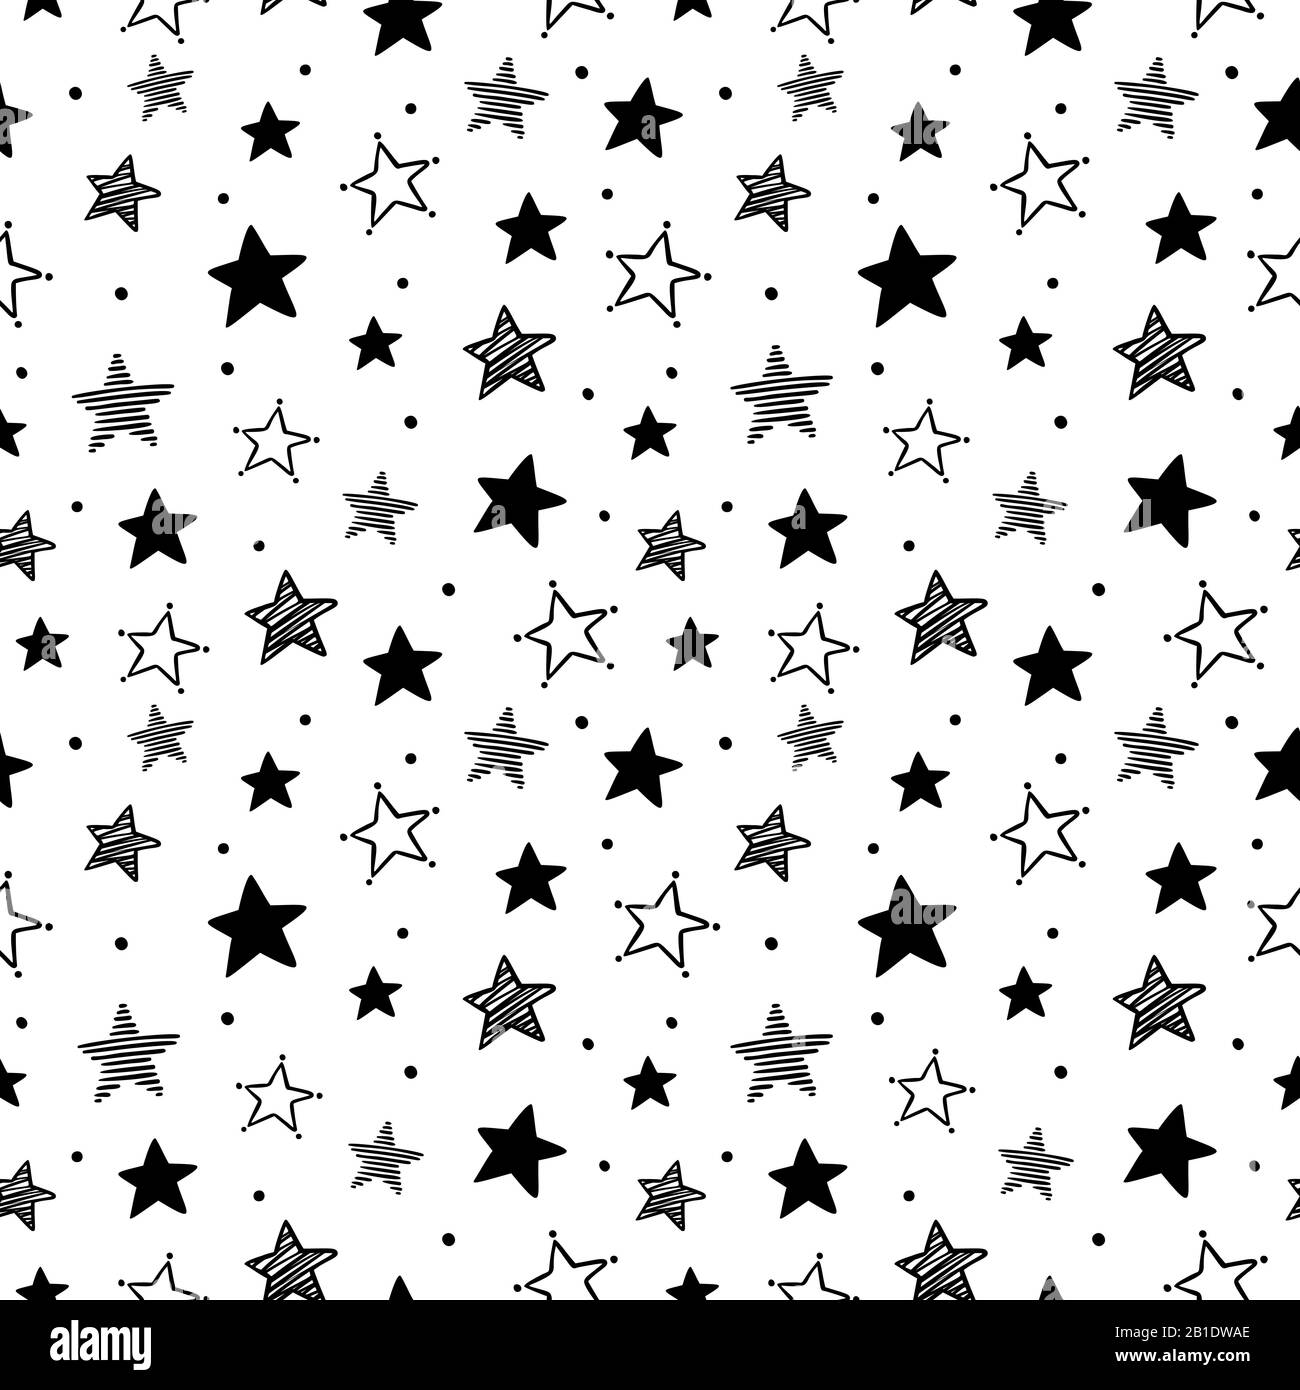 Sternenmuster von Doodle. Nahtlose Sternornamente, Nachthimmel und sternenförmige Vektorgrafiken Stock Vektor